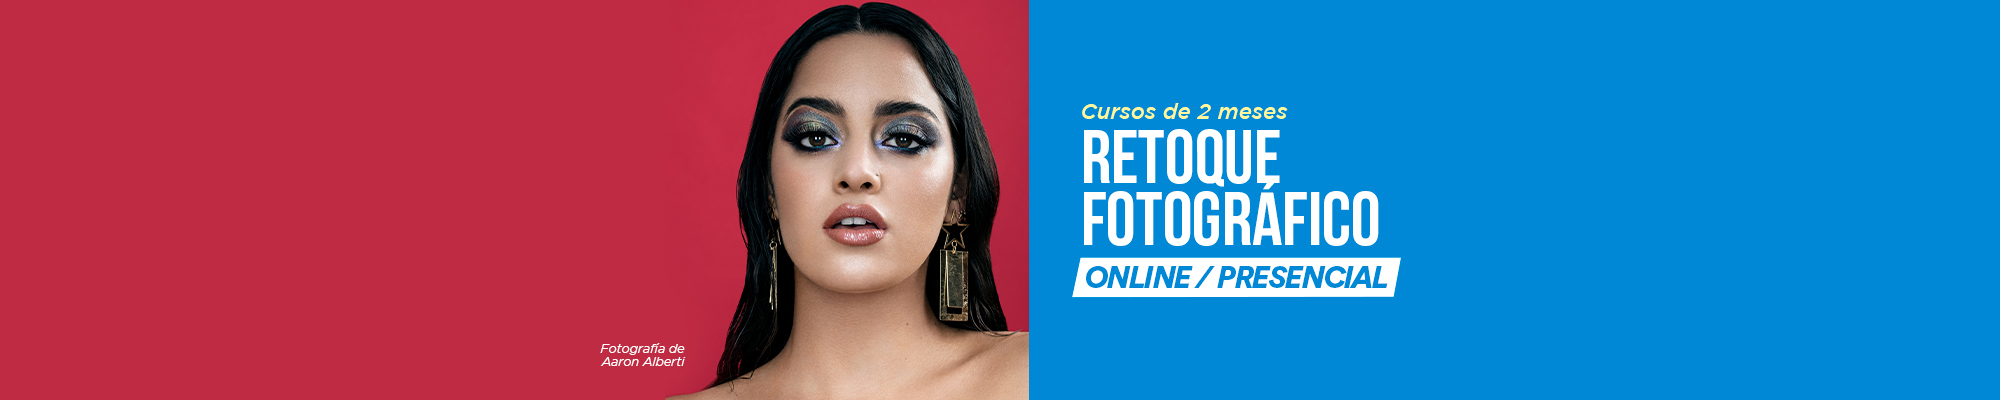 Retoque Fotográfico Online | IPAD - Instituto Peruano de Arte y Diseño